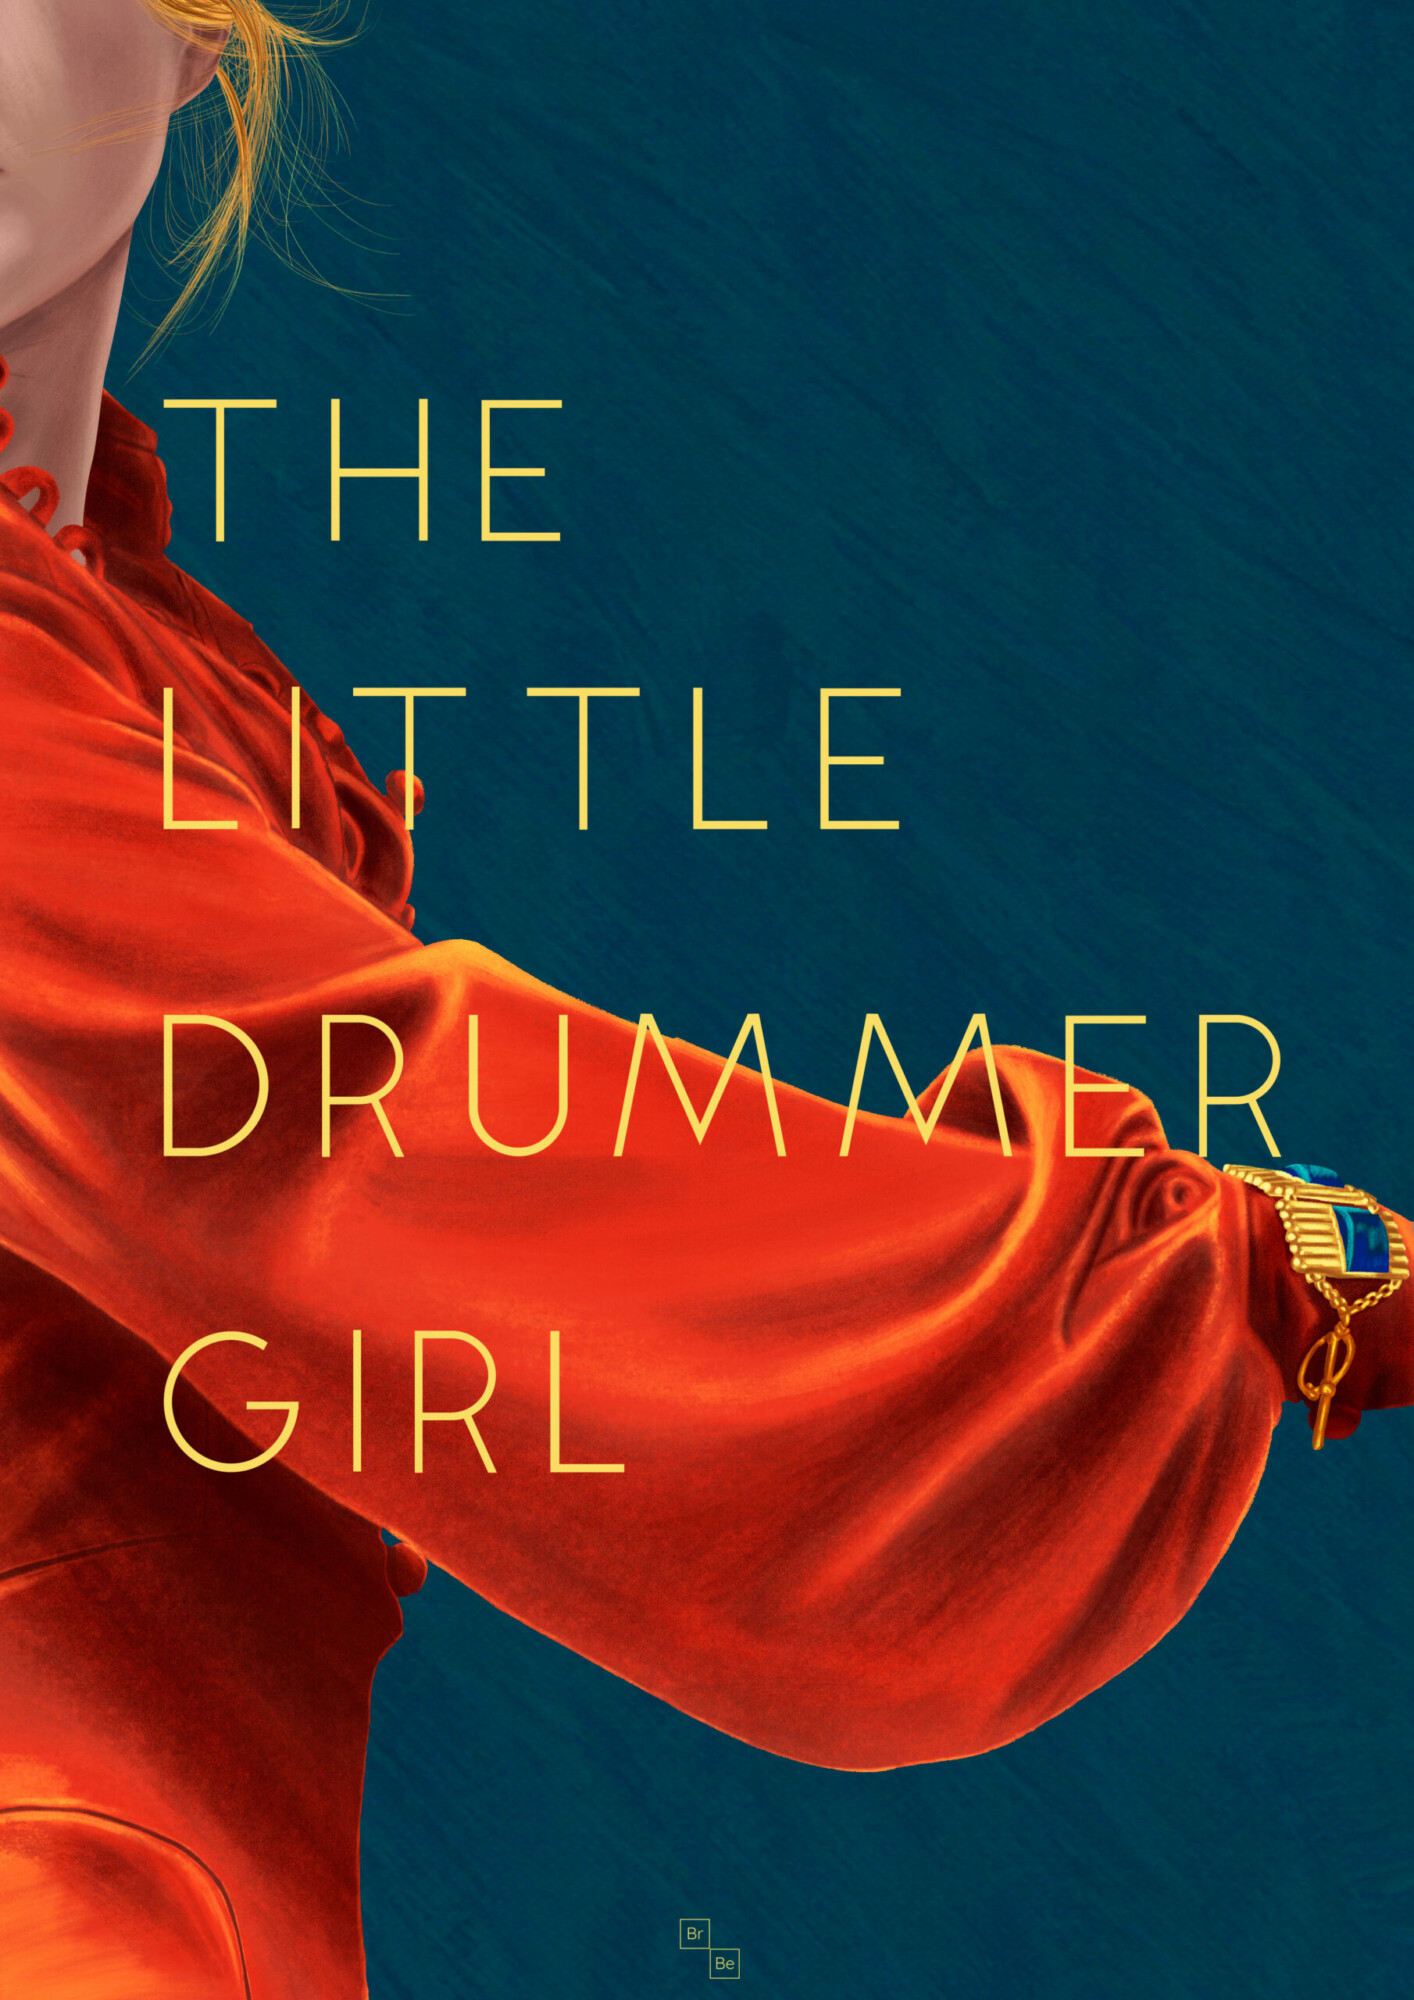 The Little Drummer Girl Brokenbeanie Posterspy